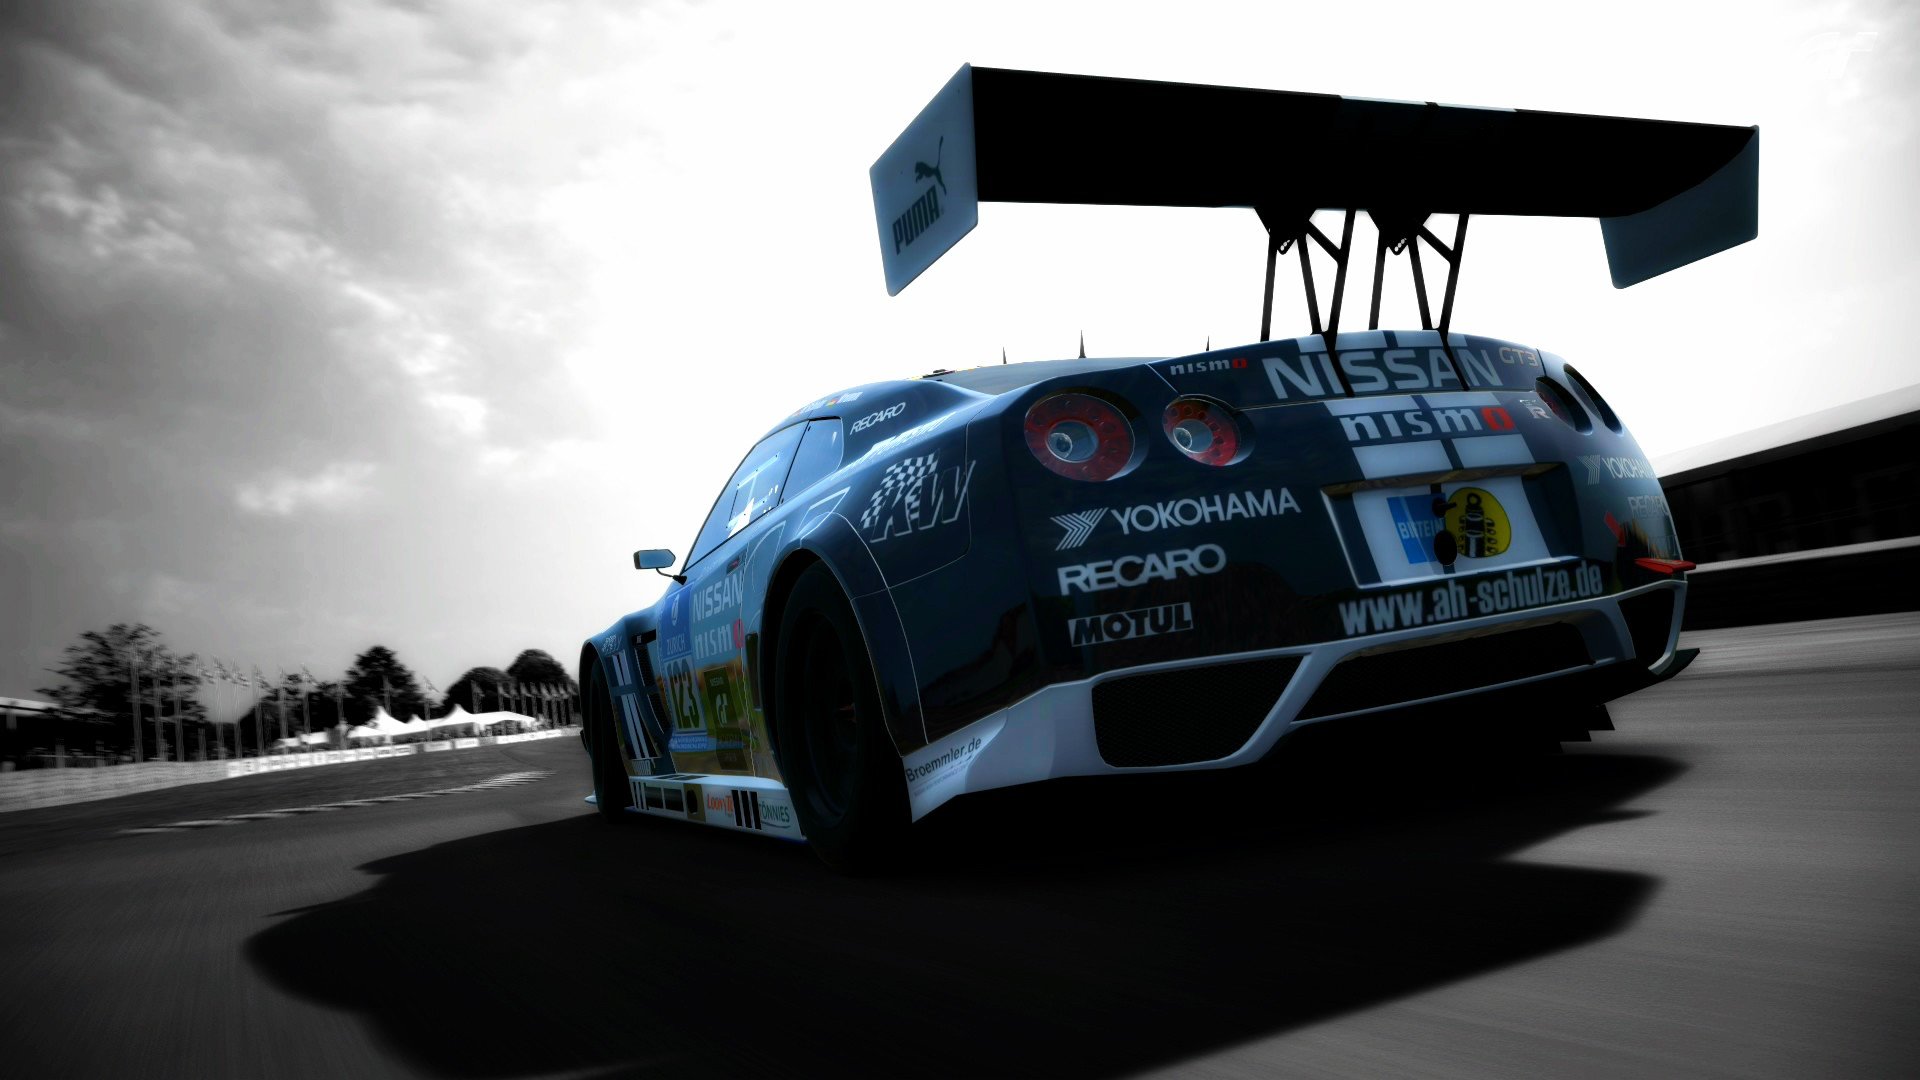 Gran Turismo, Nissan GTR, Racing simulators Wallpaper